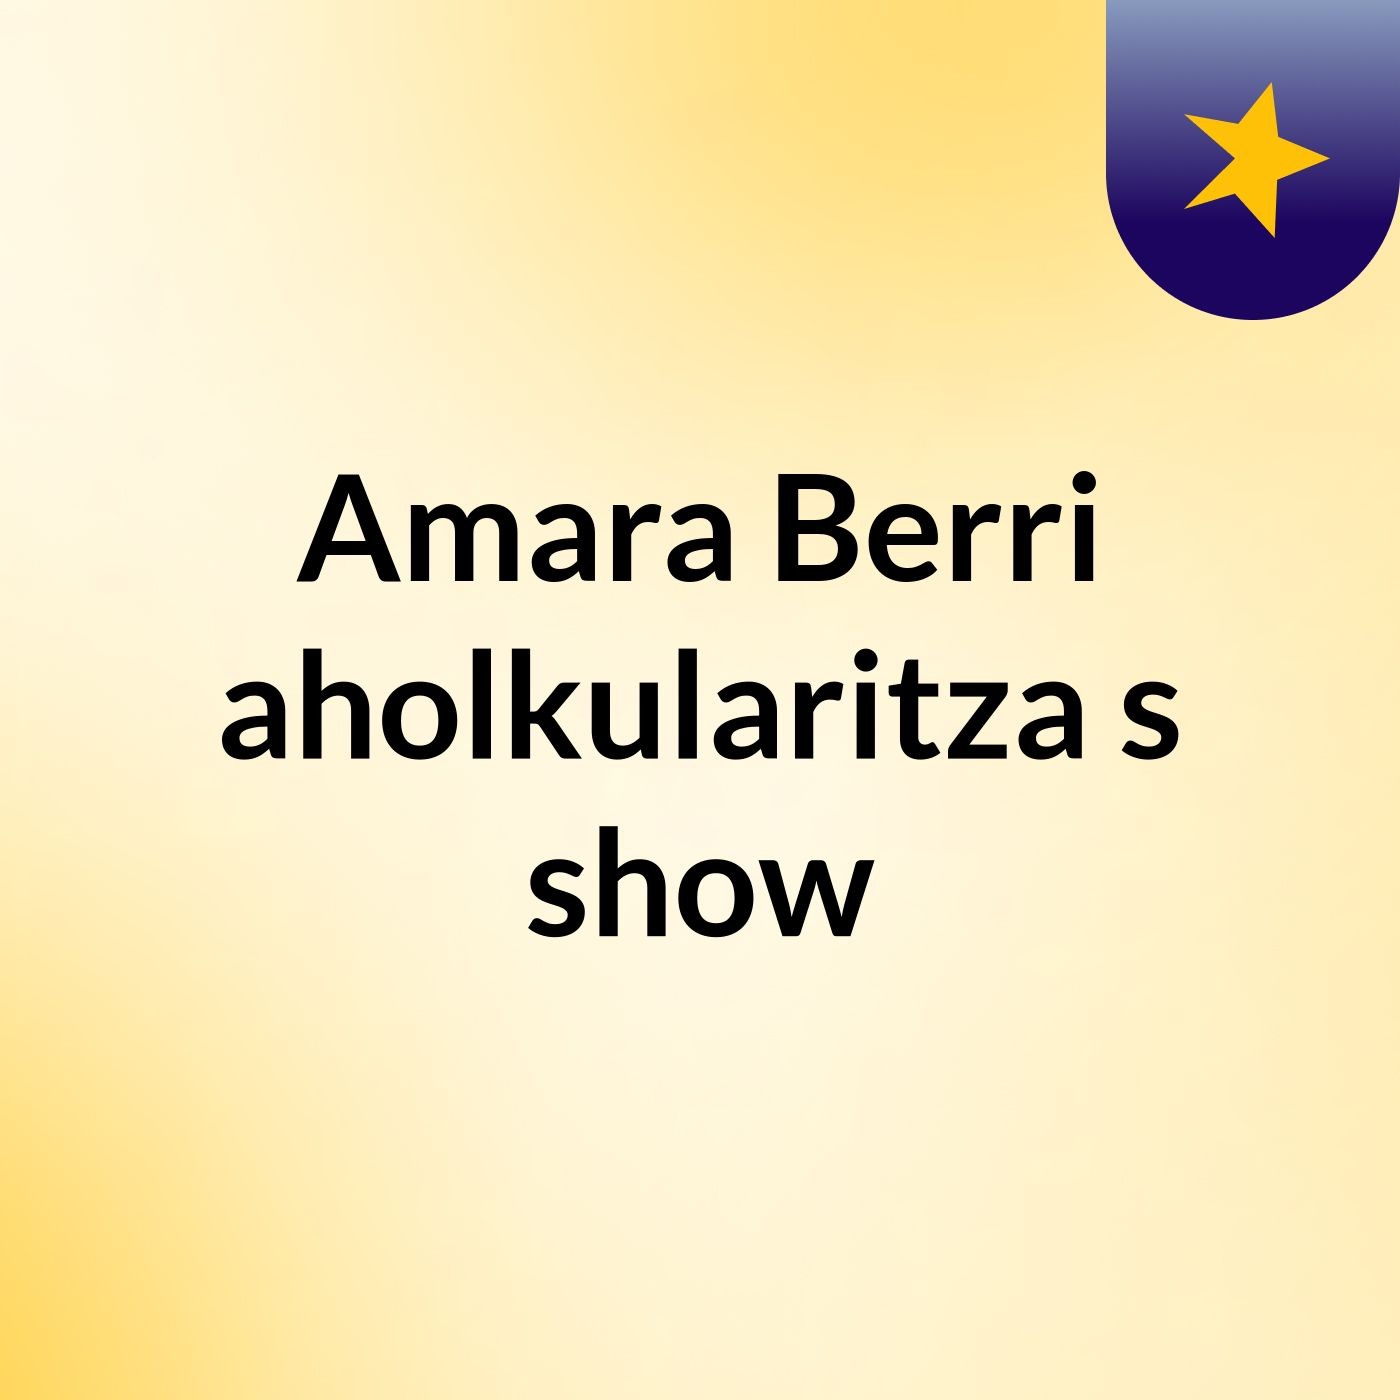 Amara Berri aholkularitza's show